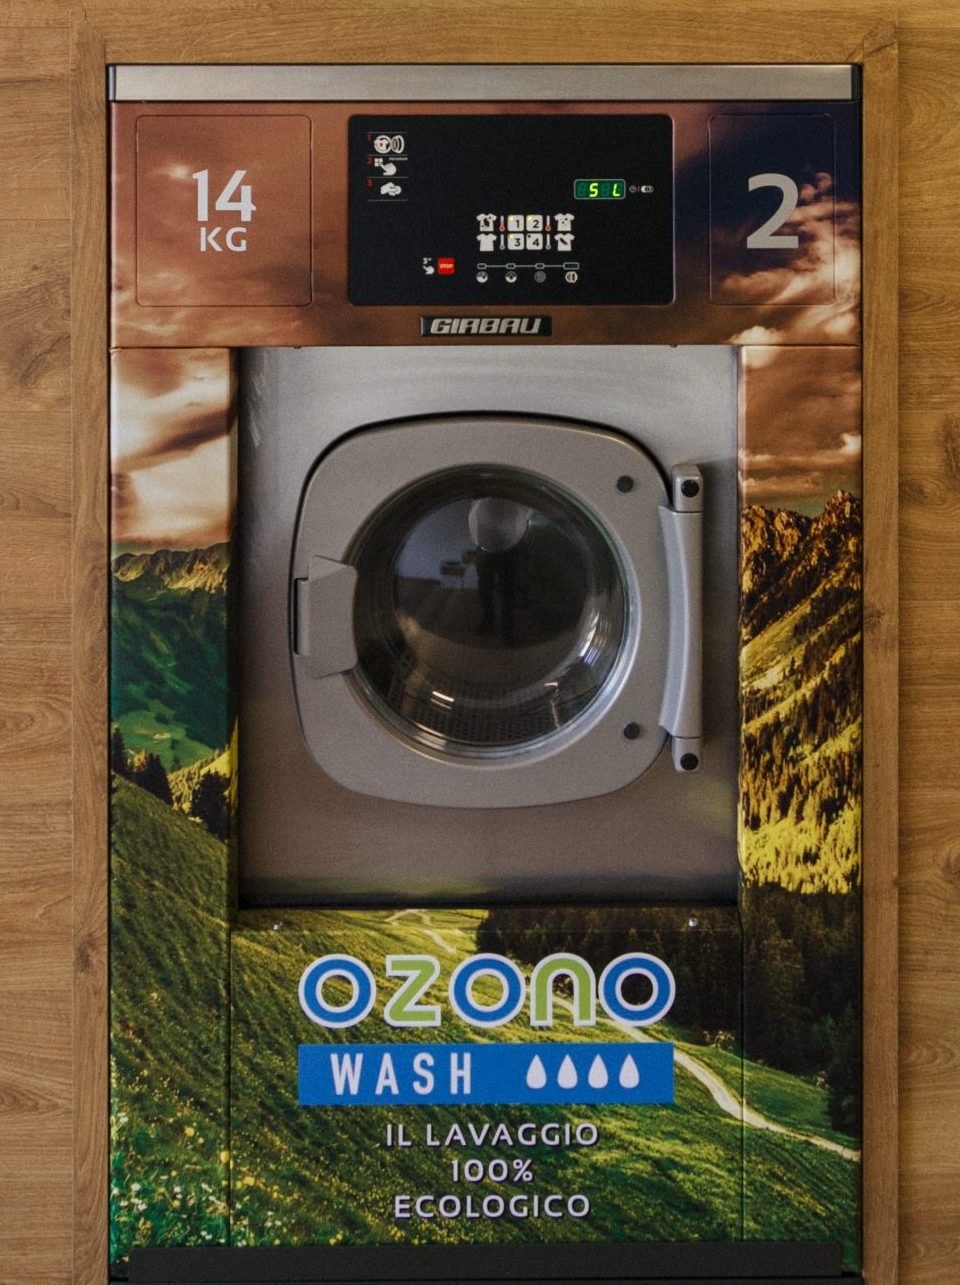 Lavare in lavatrice con acqua ozonizzata, i tuoi capi saranno igienizzati